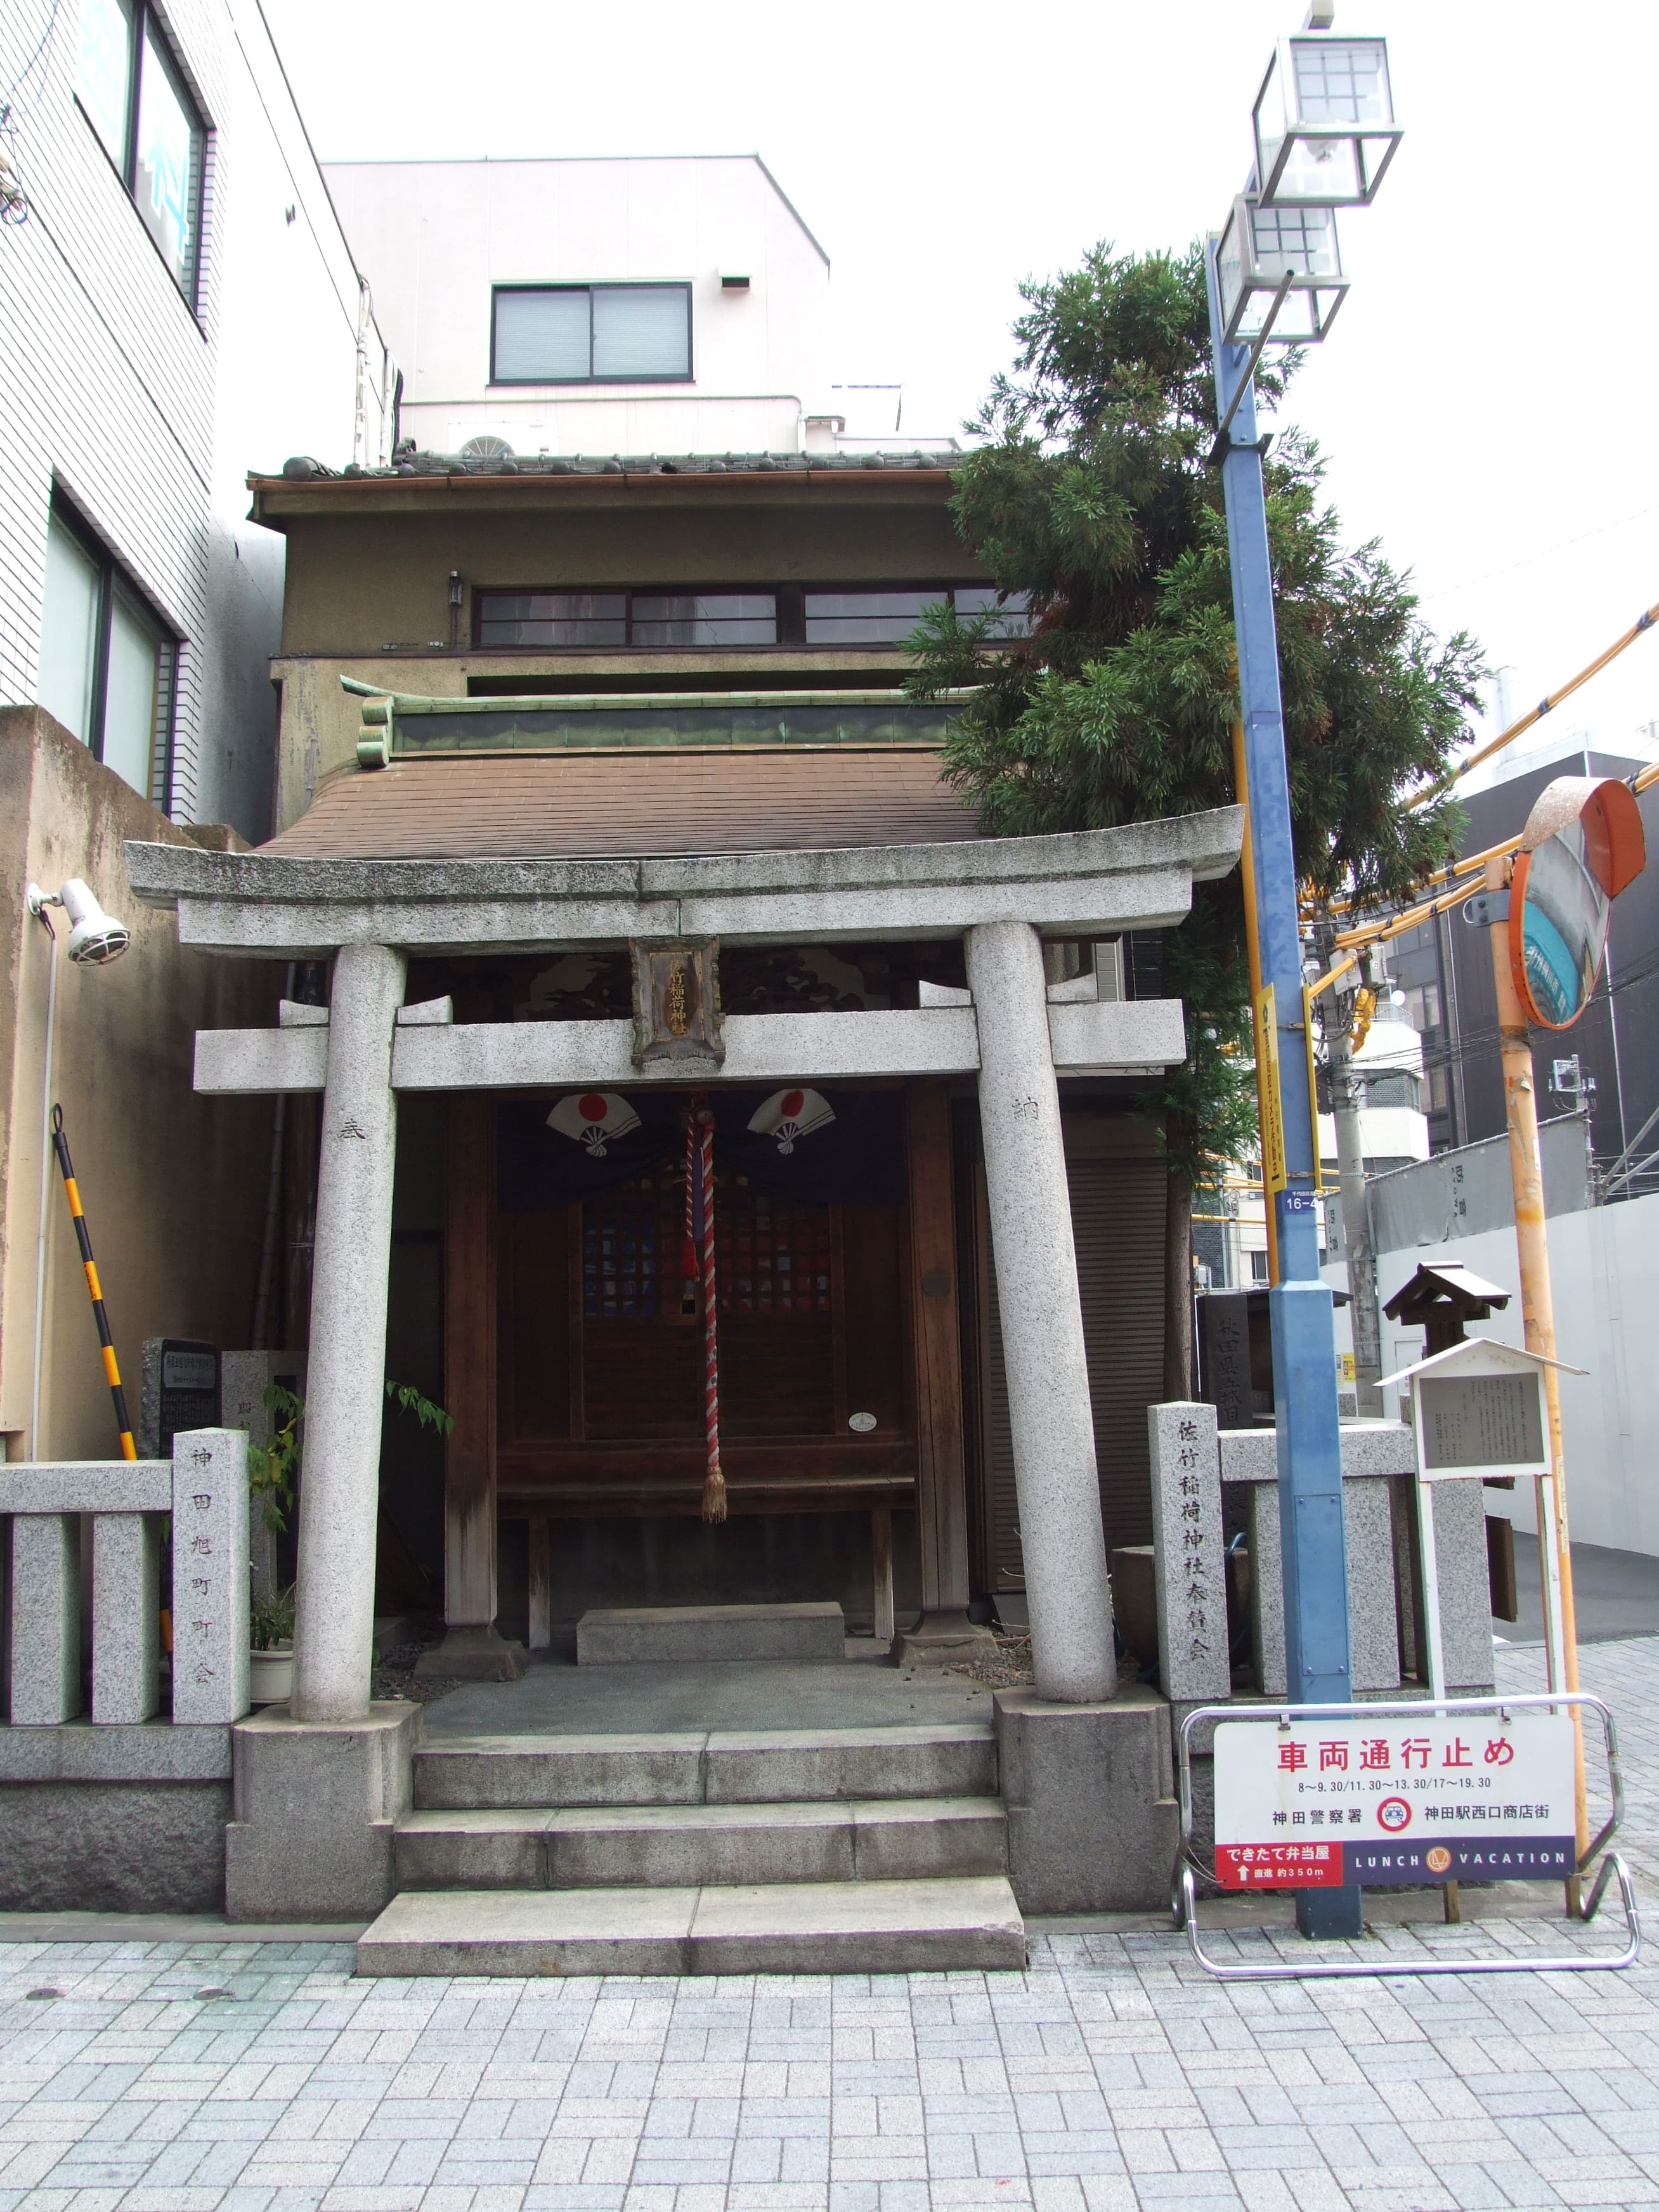  佐竹稲荷神社 